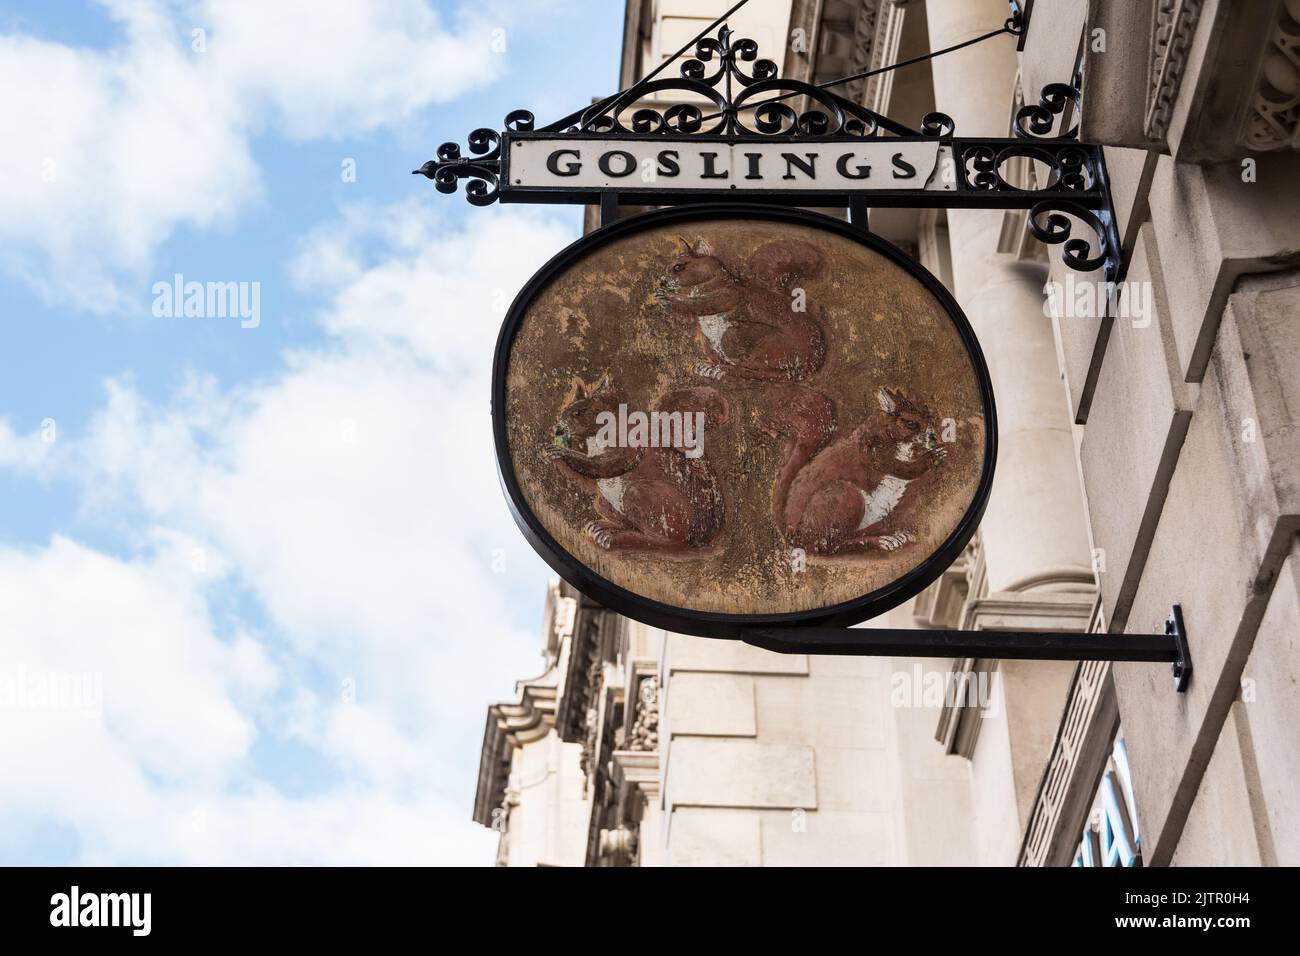 Primer plano de la rama 'goeslings' de Barclays Bank en Fleet Street en el signo de las tres ardillas, 19 Fleet Street, Temple, Londres, EC4, Inglaterra Foto de stock